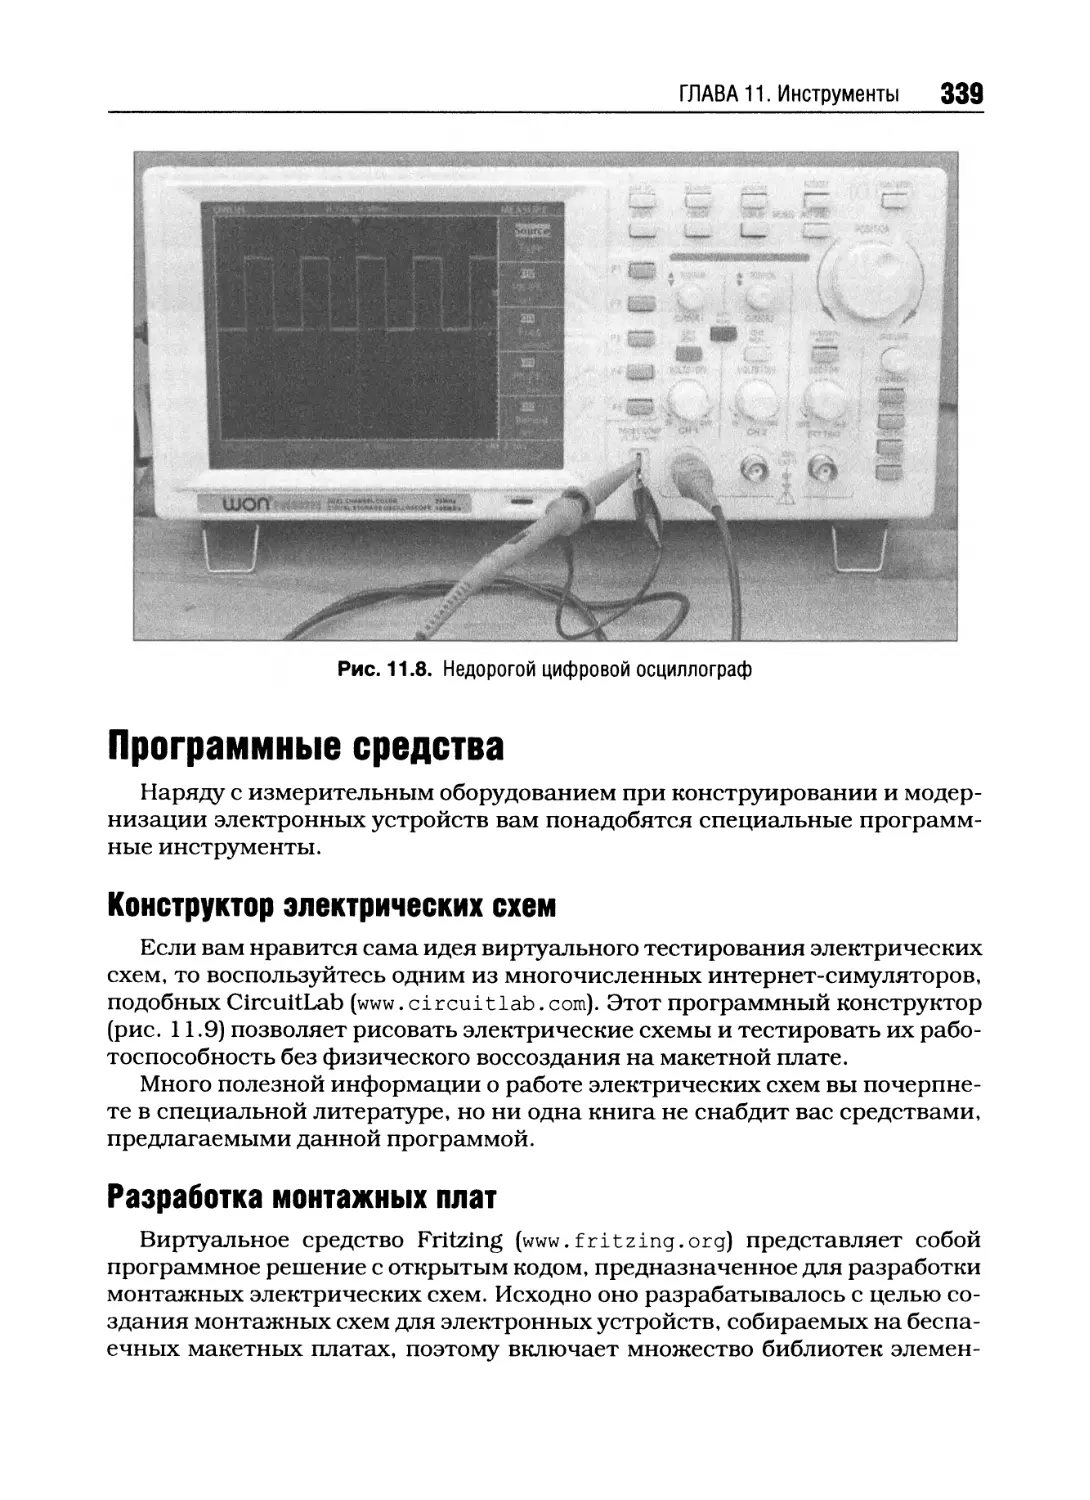 Программные средства
Конструктор электрических схем
Разработка монтажных плат